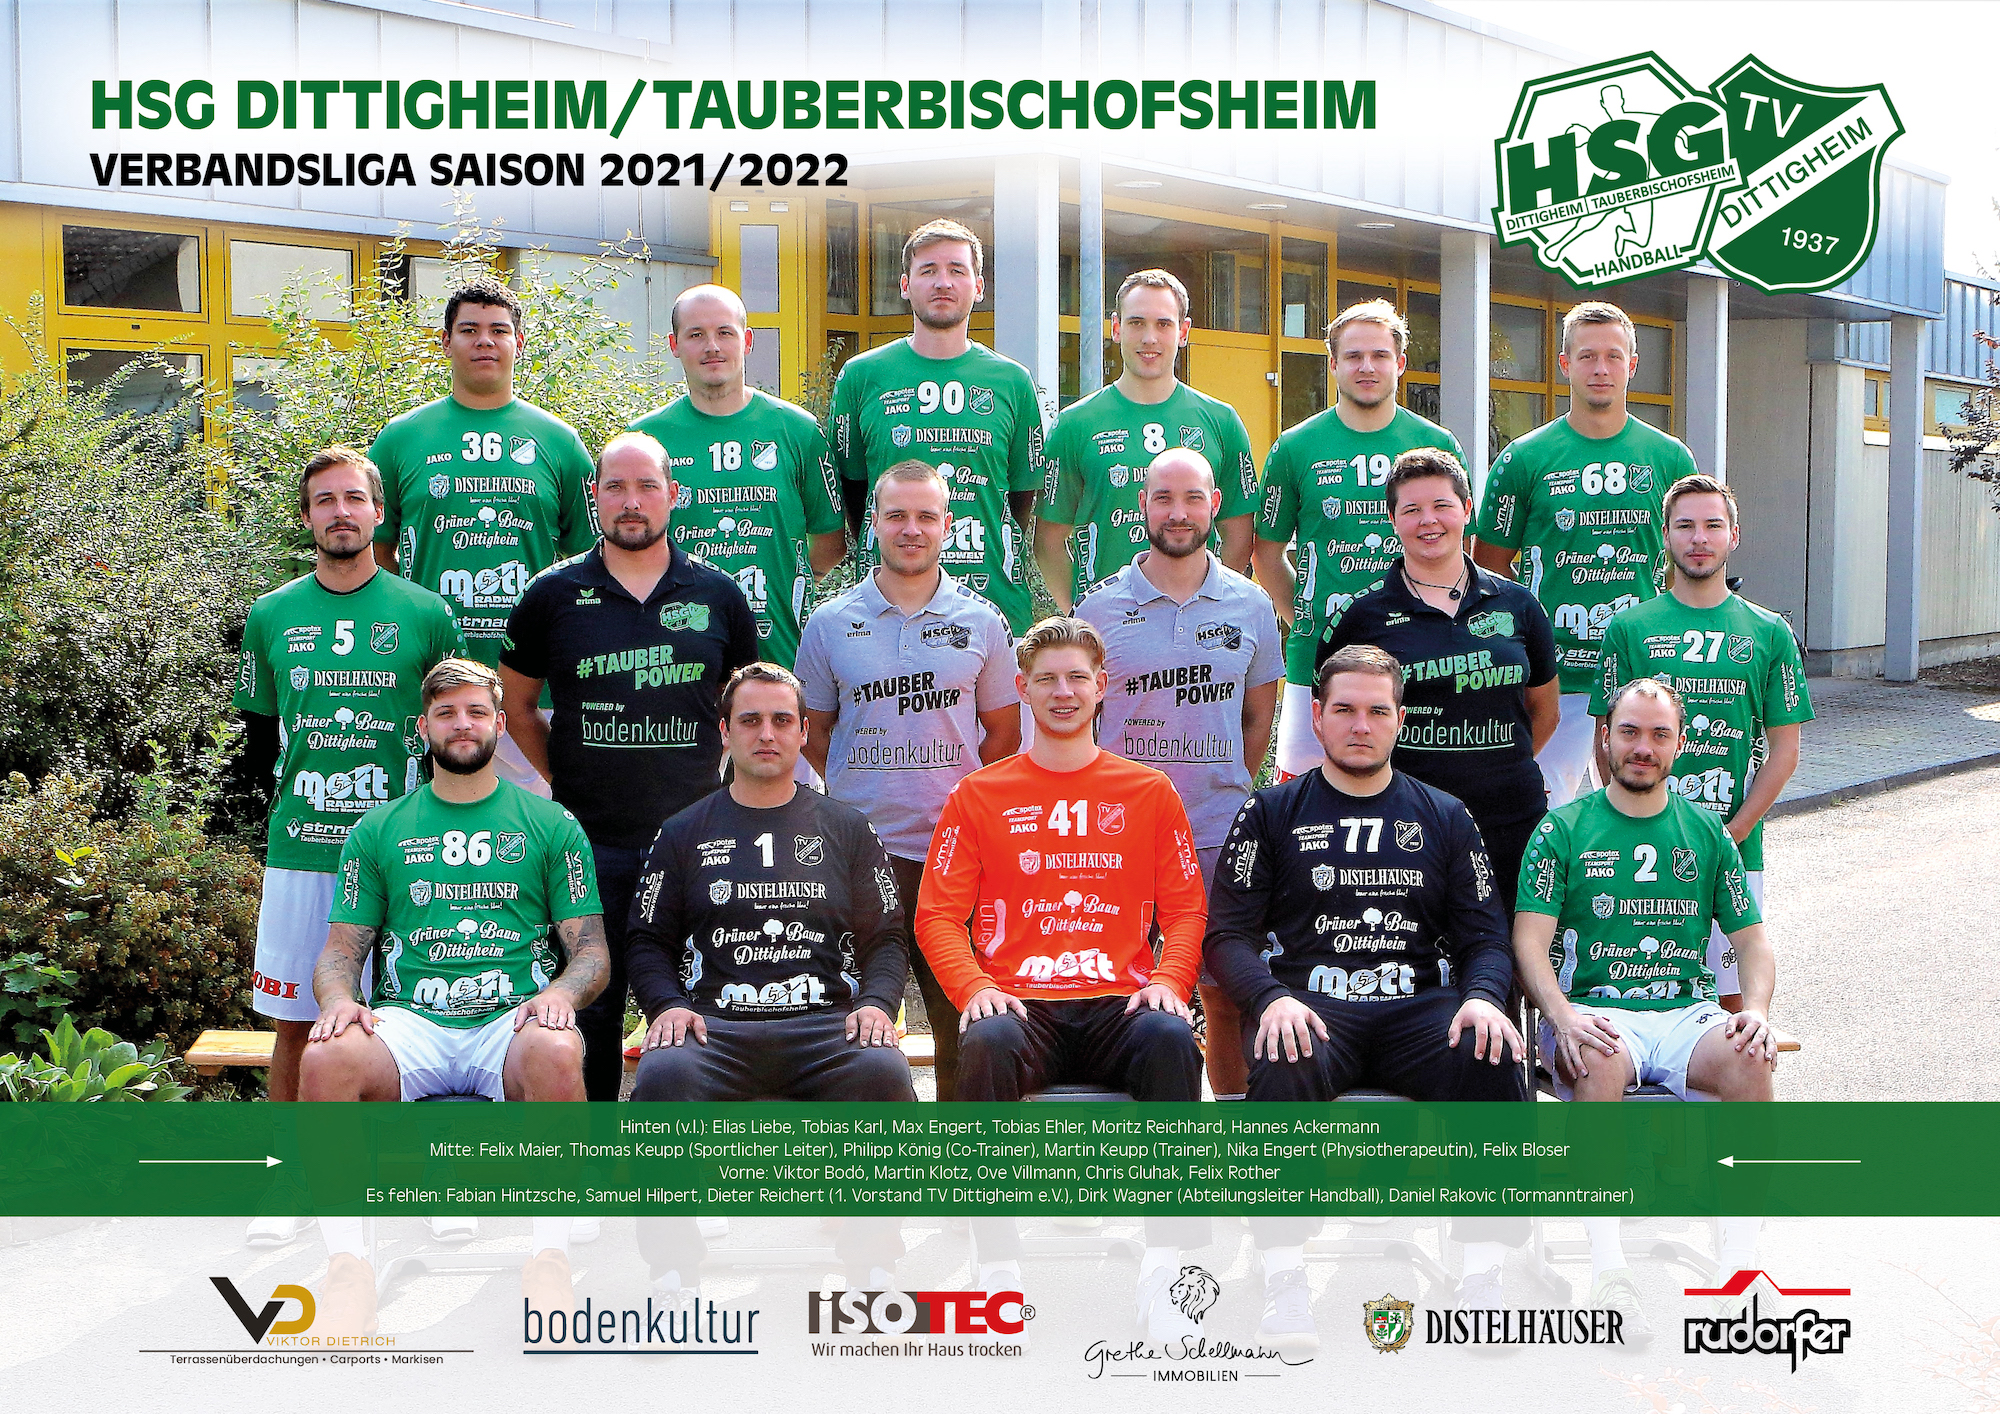 HSG Dittigheim/Tauberbischofsheim - Saison 2021/2022 - Verbandsliga